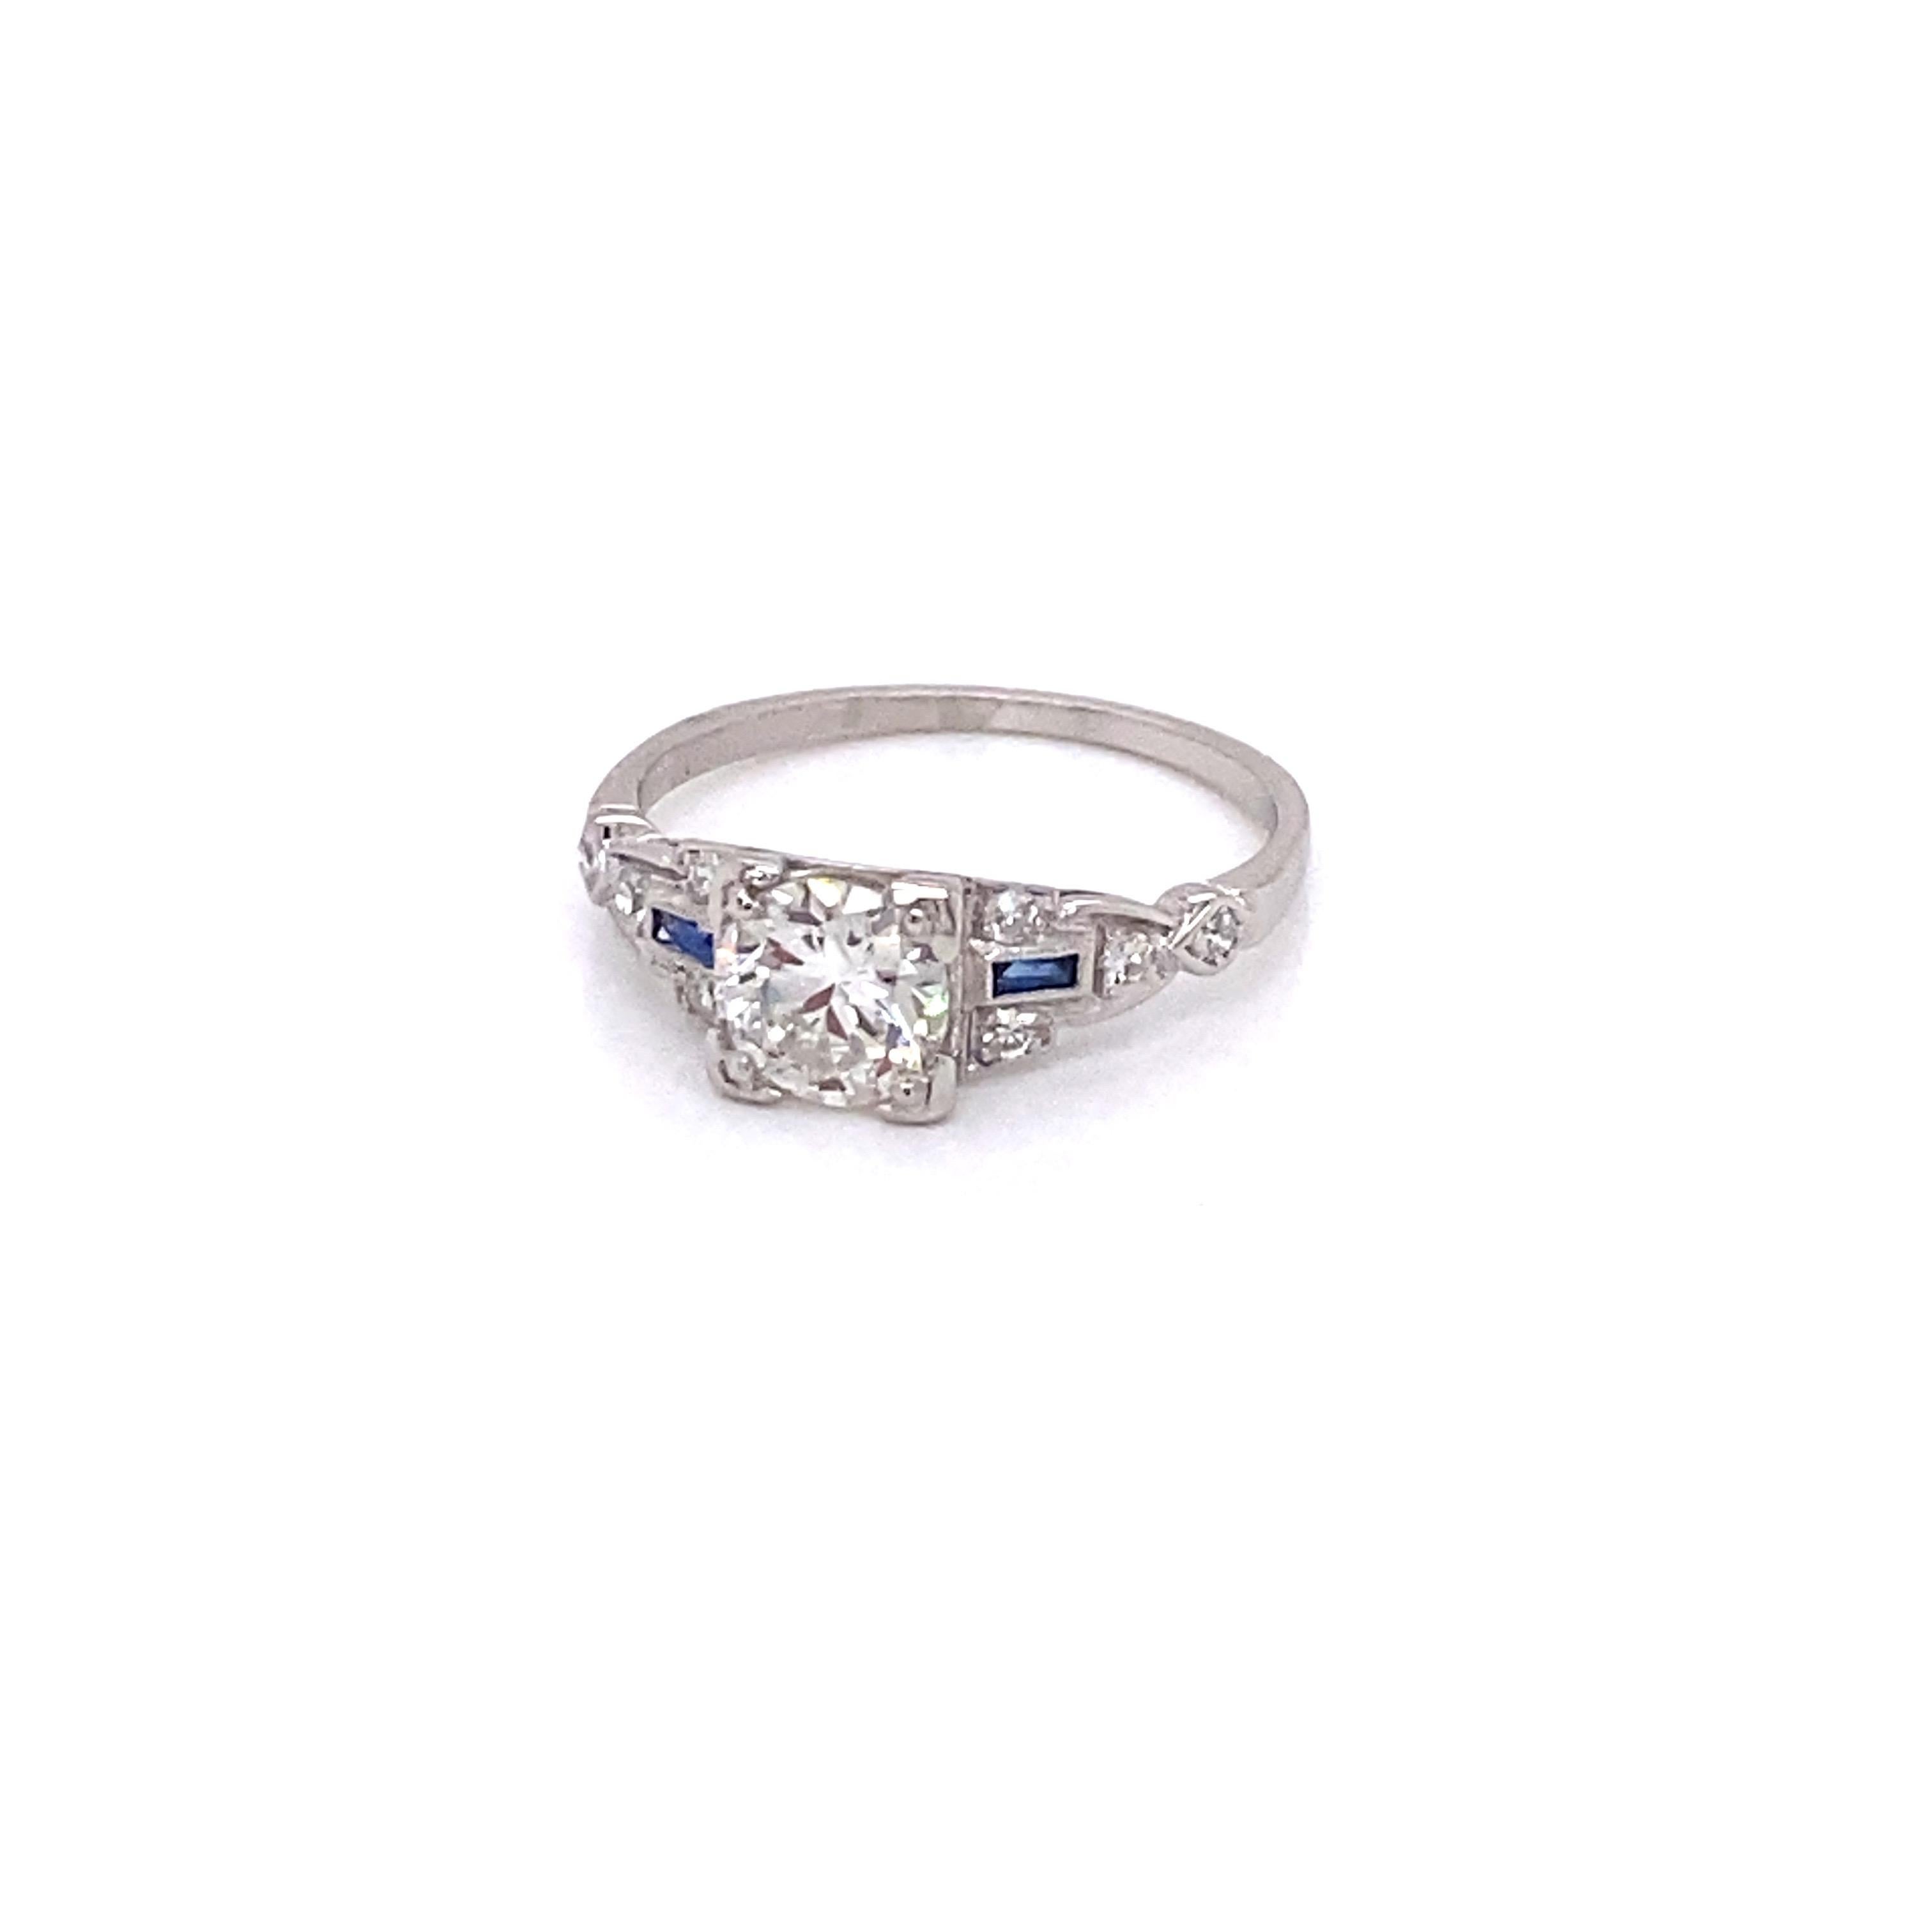 Vintage Art Deco European Cut Diamant Verlobungsring mit Saphiren - Der zentrale European Cut Diamant wiegt .83ct mit I Farbe und SI3 Klarheit. Es gibt 8 einzeln geschliffene Diamanten mit einem Gewicht von ca. 0,10 ct und 2 Baguettes im